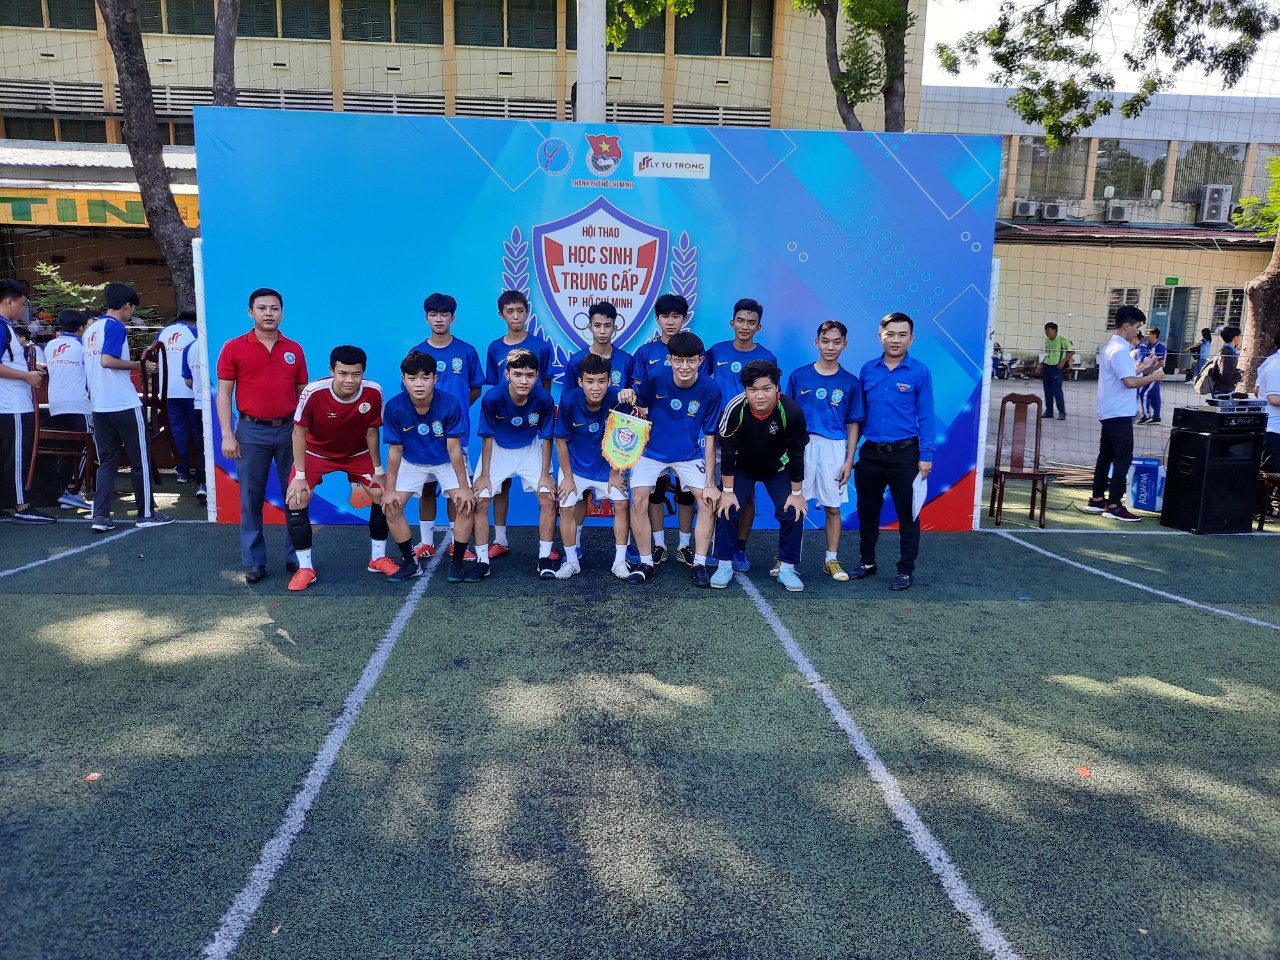 Tham gia thi đấu Hội thao “Học sinh Trung cấp Thành phố Hồ Chí Minh” Lần 2, năm 2020.